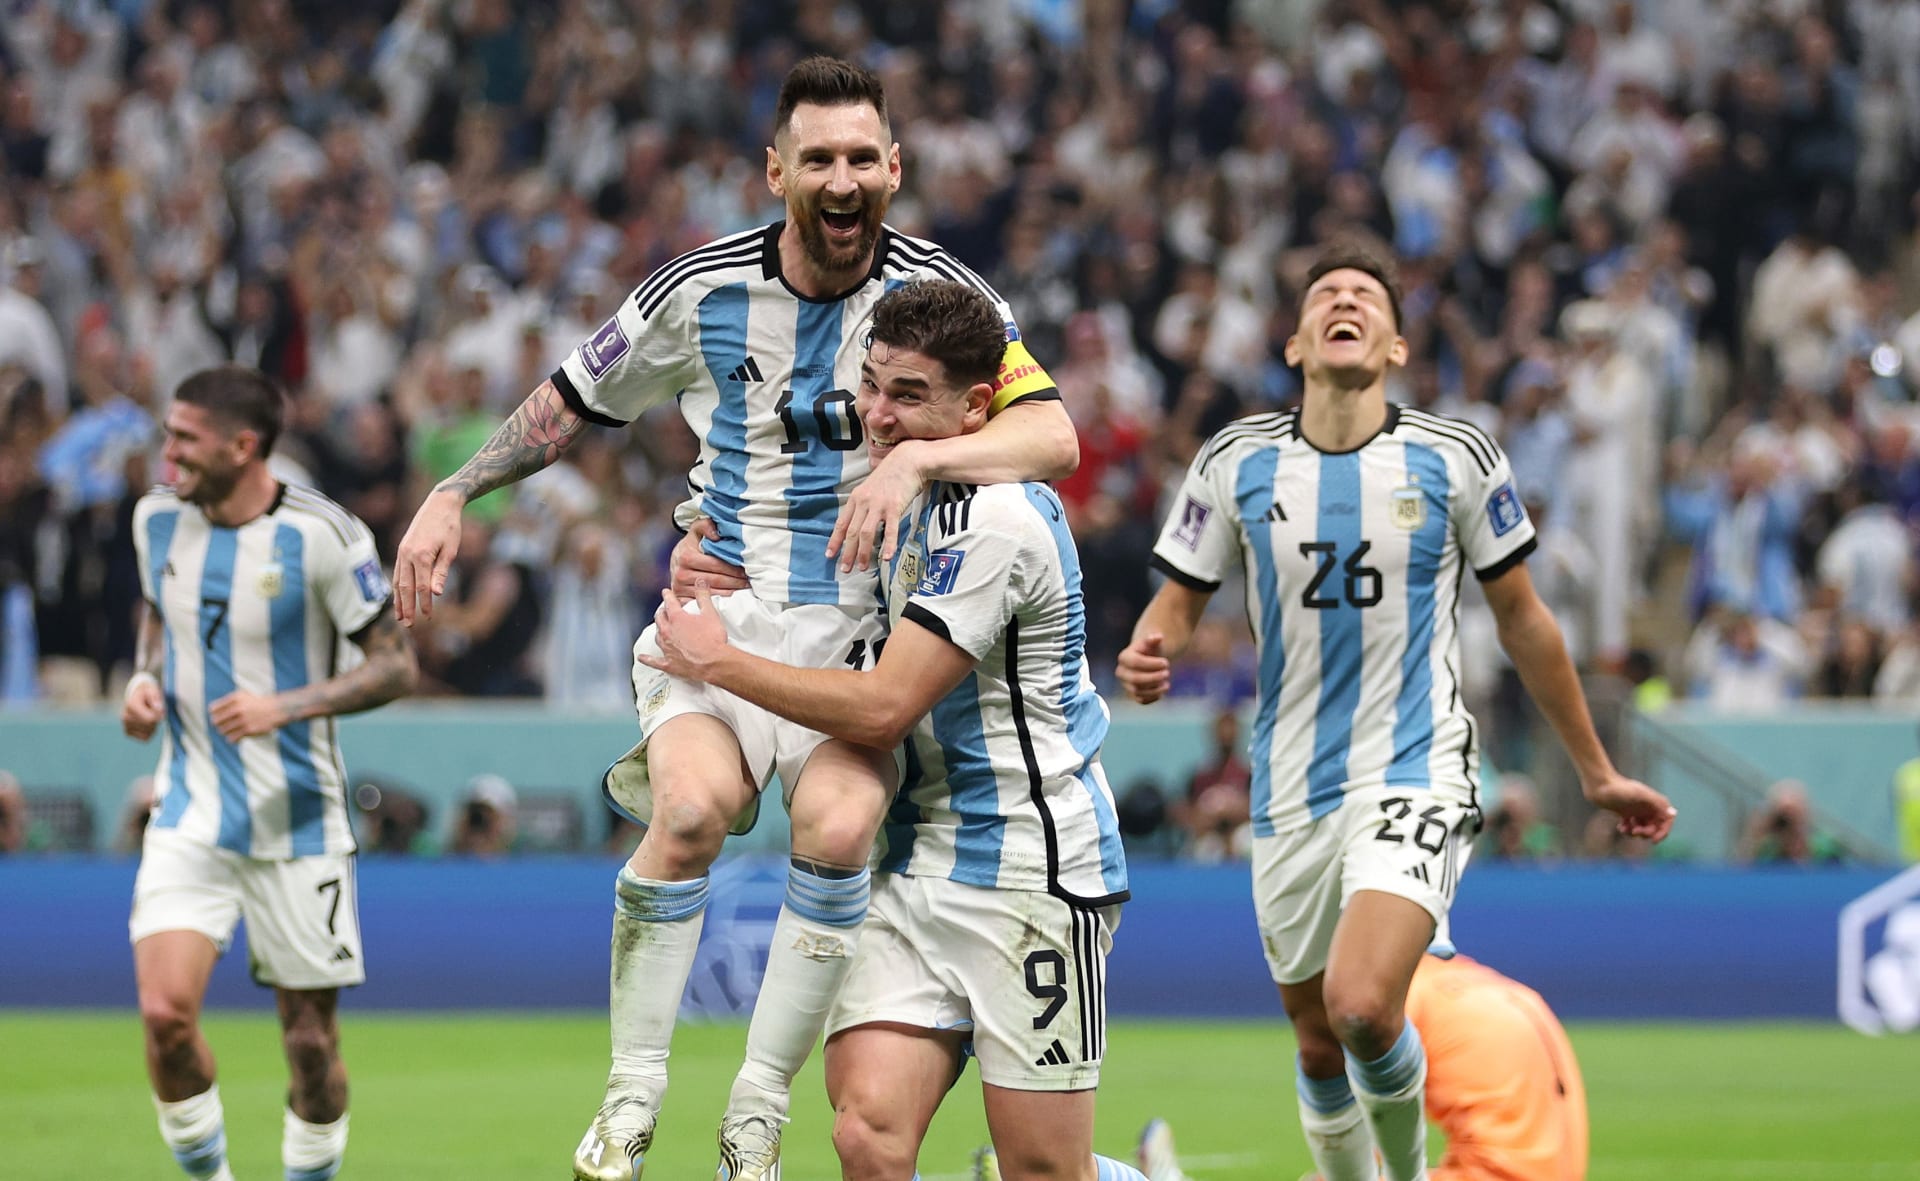 Kdysi Julián Álvarez žádal coby velký fanoušek Lionela Messiho o fotografii, teď spolu s ním dotáhl Argentinu do finále.